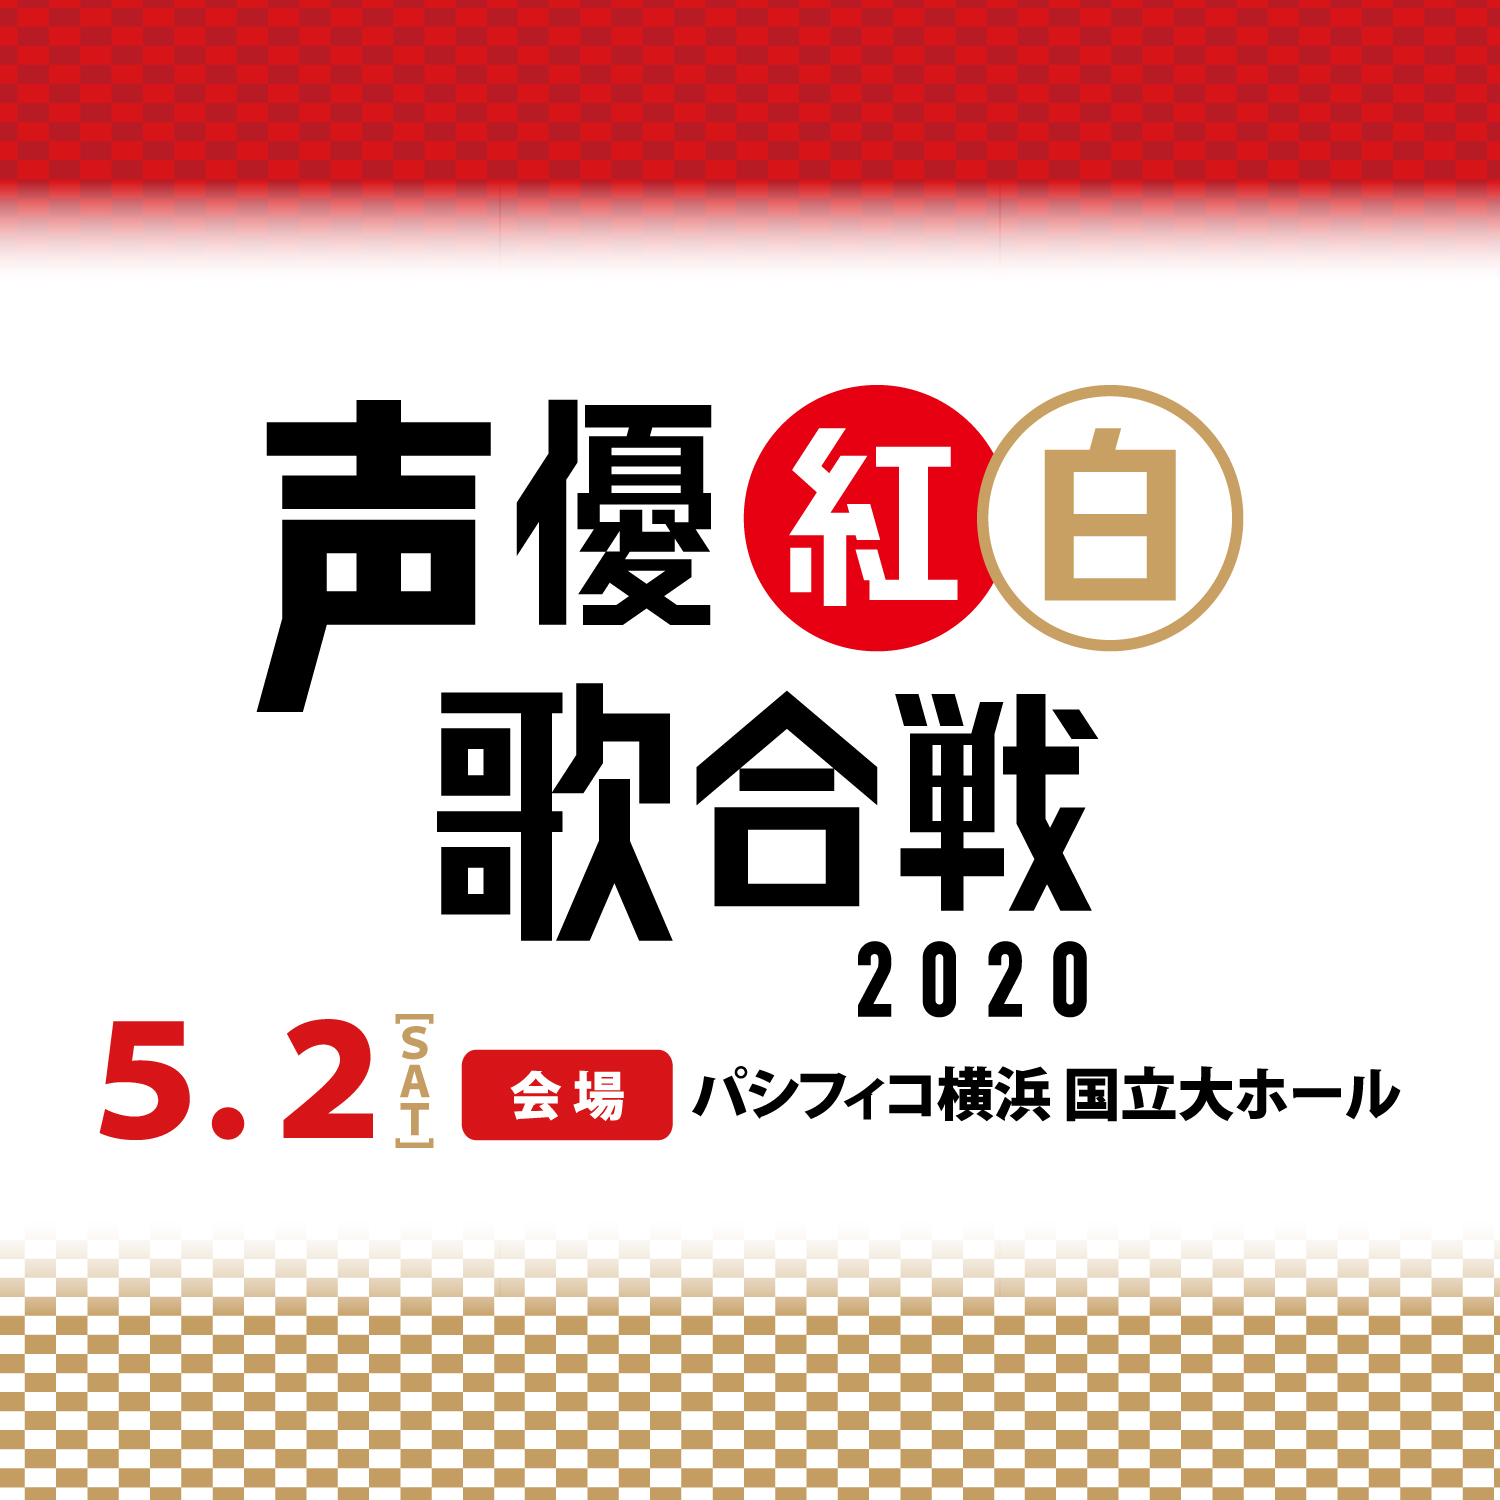 『声優紅白歌合戦2020』ロゴ